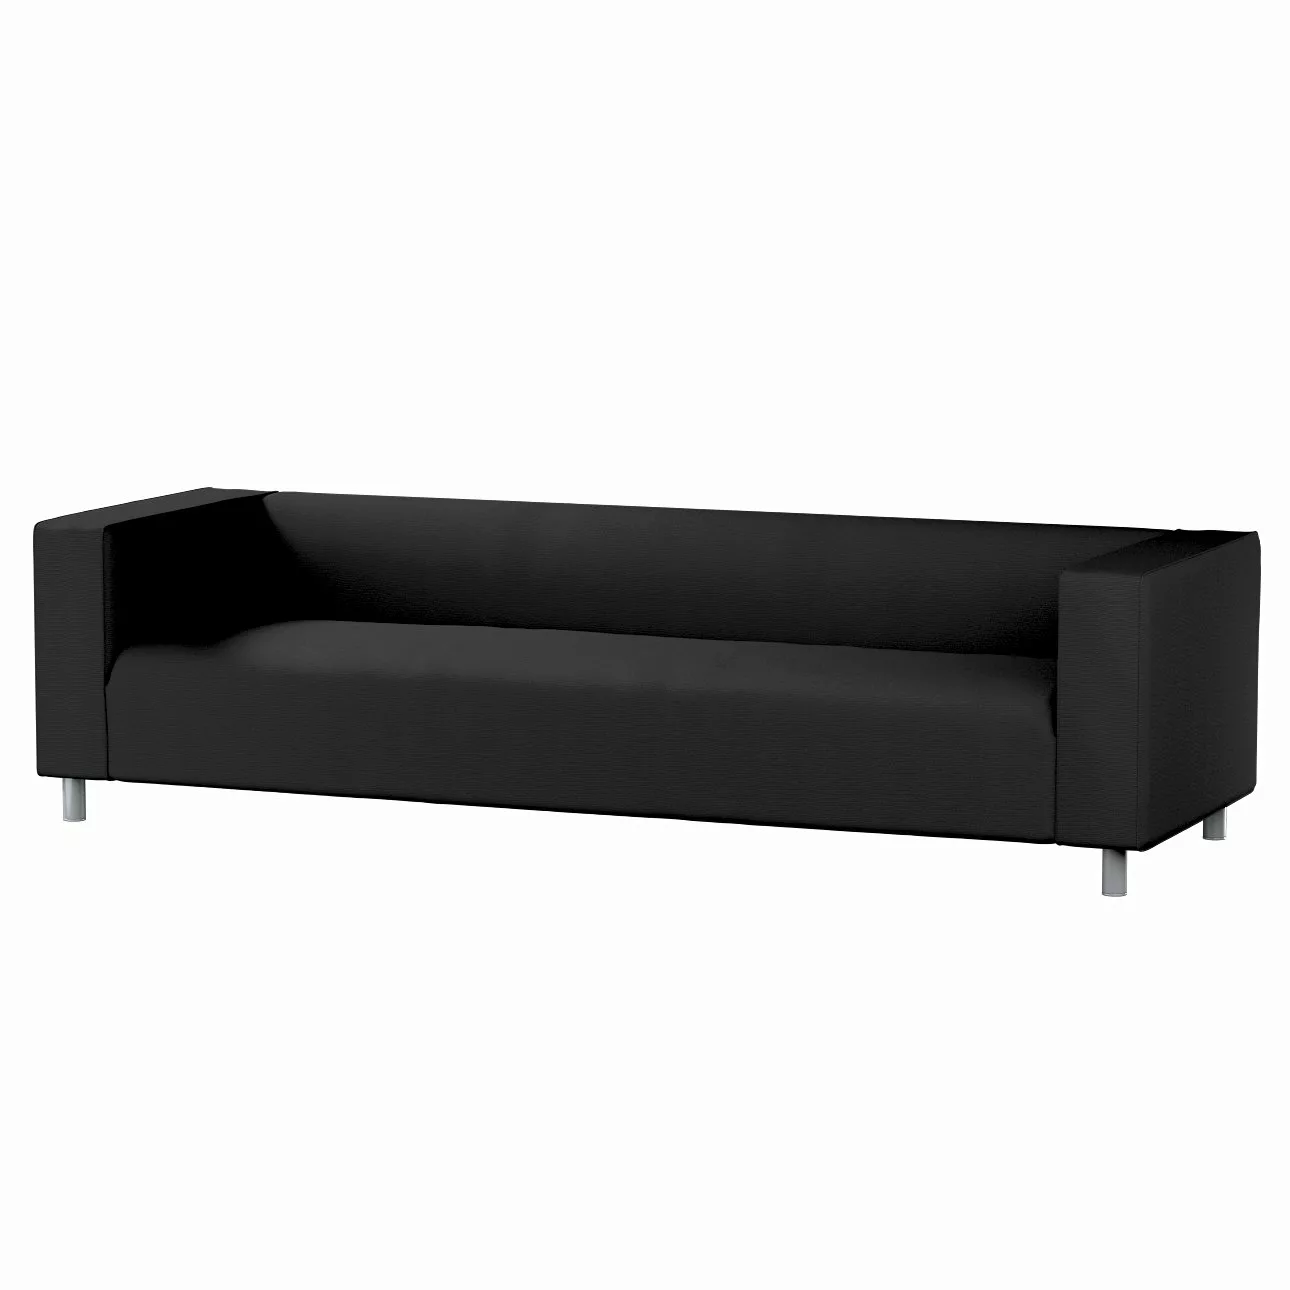 Bezug für Klippan 4-Sitzer Sofa, schwarz, Bezug für Klippan 4-Sitzer, Etna günstig online kaufen